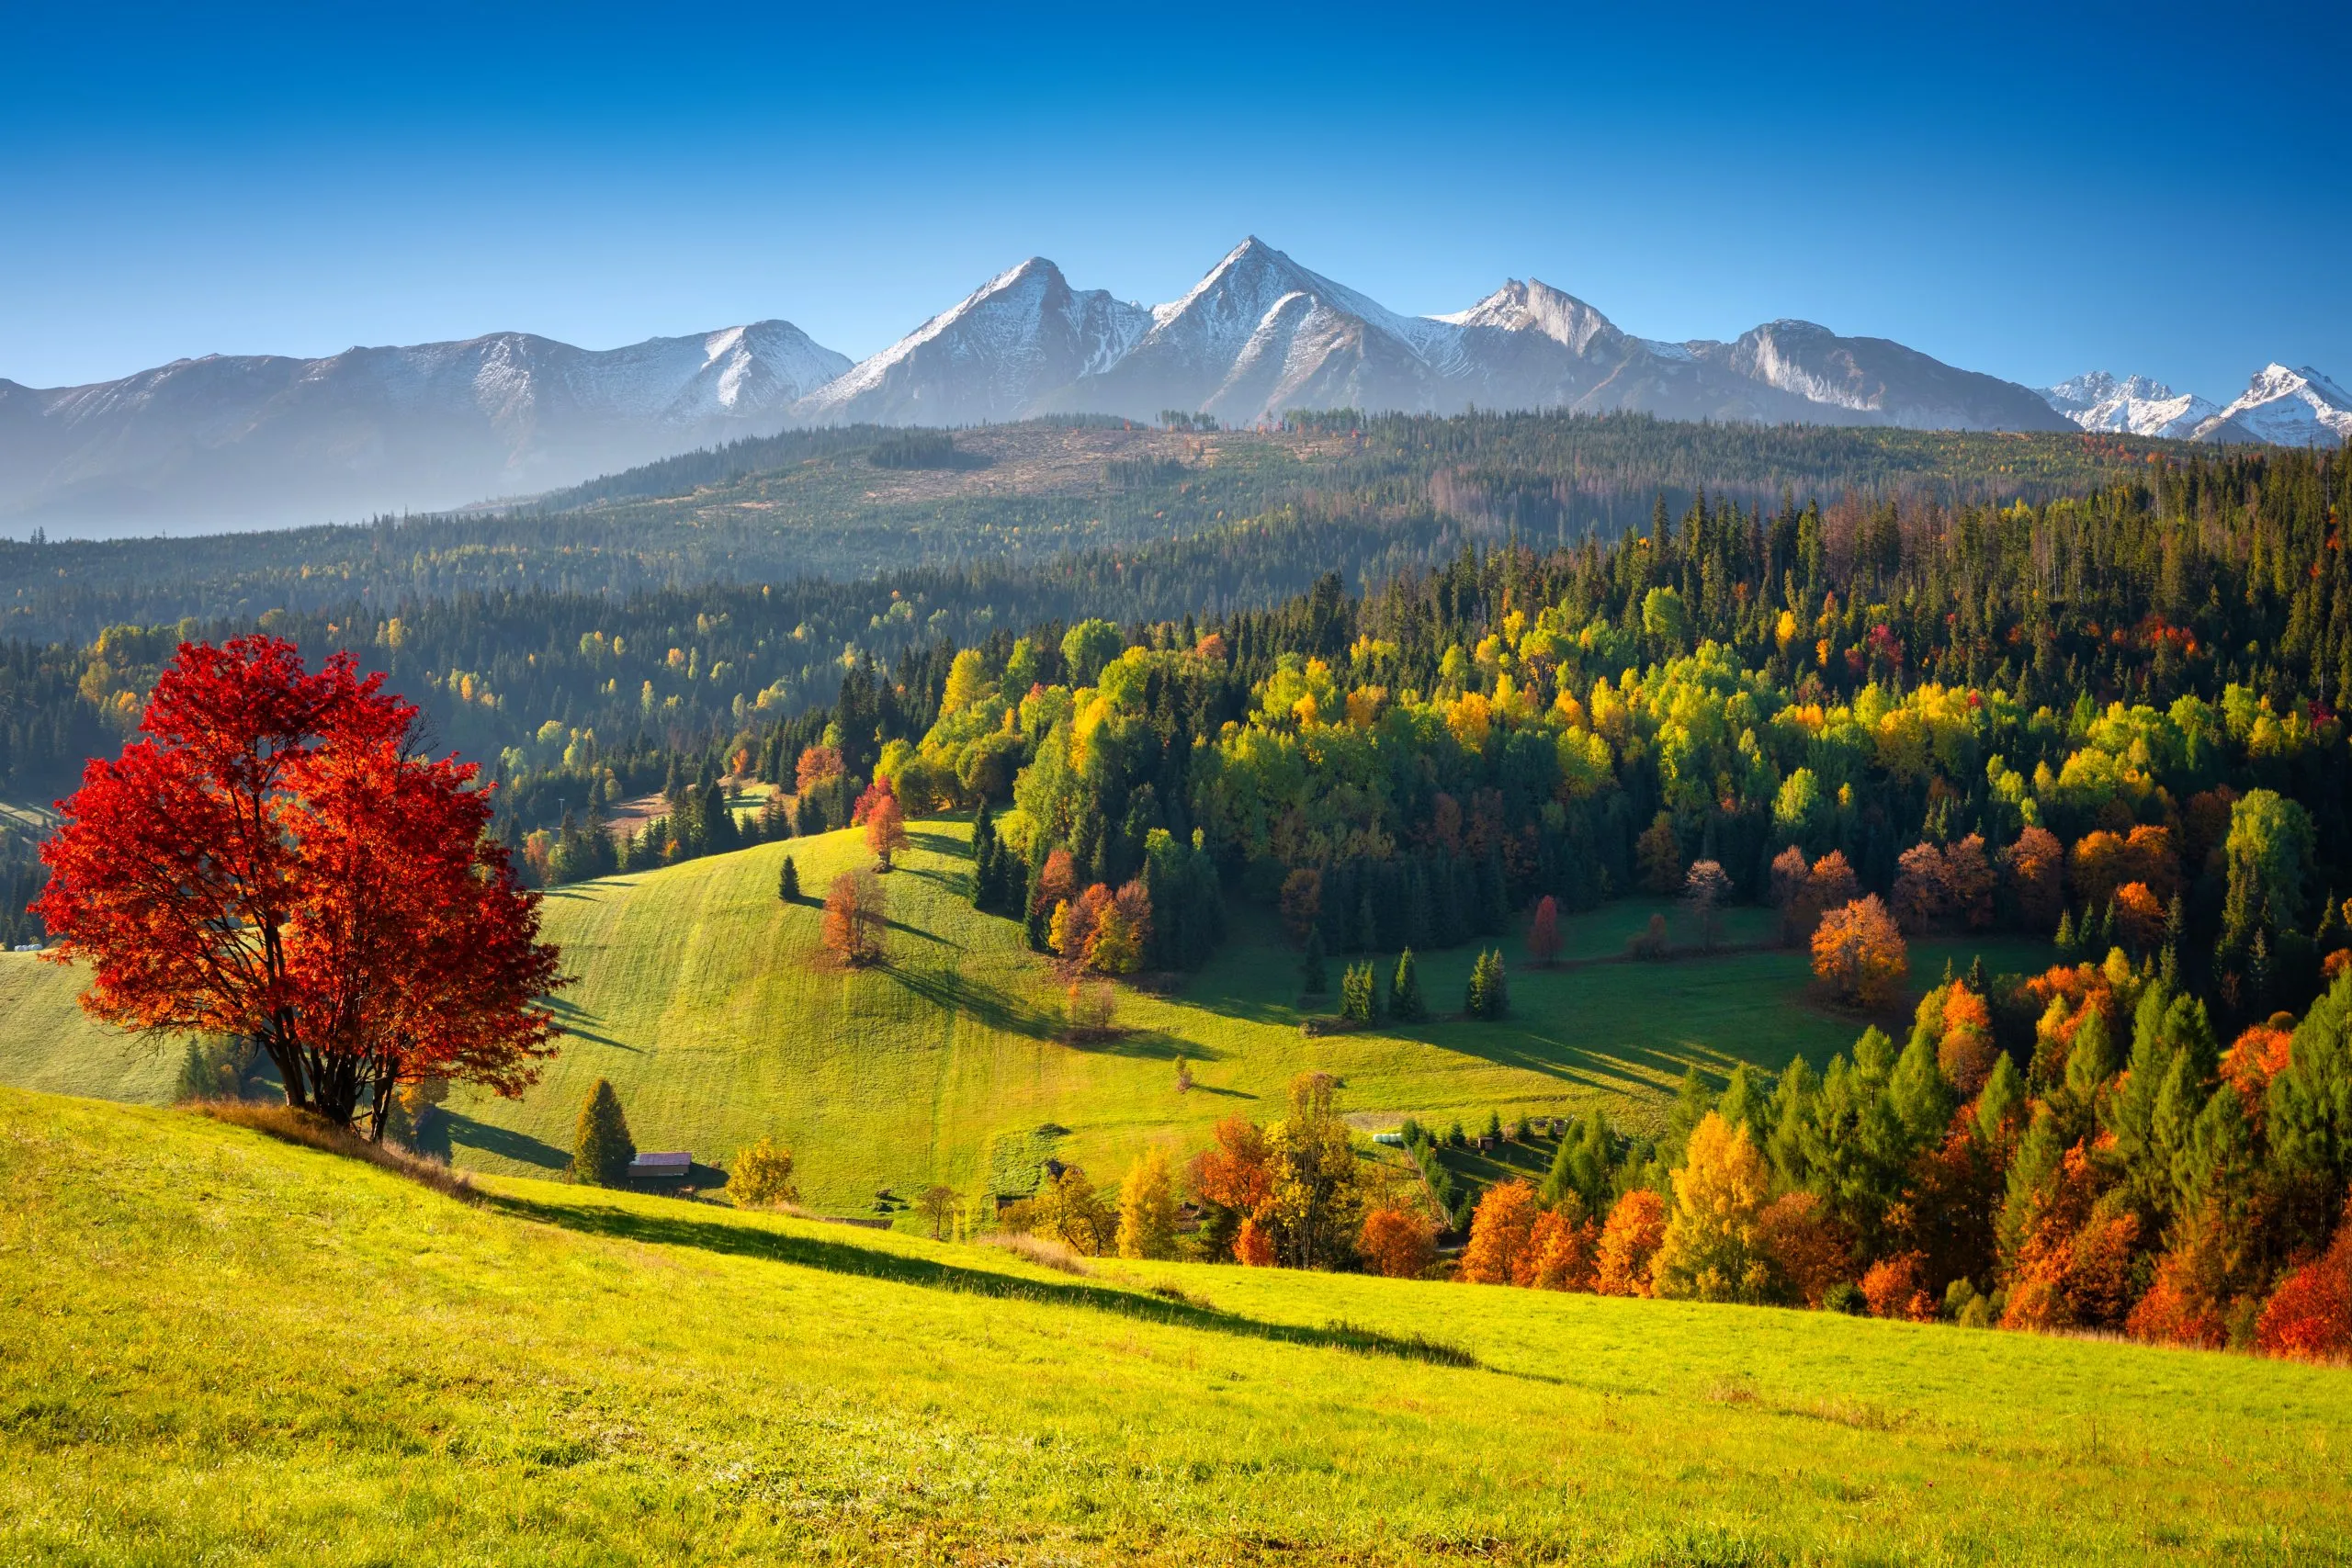 Kaunis syksy punaisine ja keltaisine puineen Tatra-vuorten alla auringonnousun aikaan. Slovakia